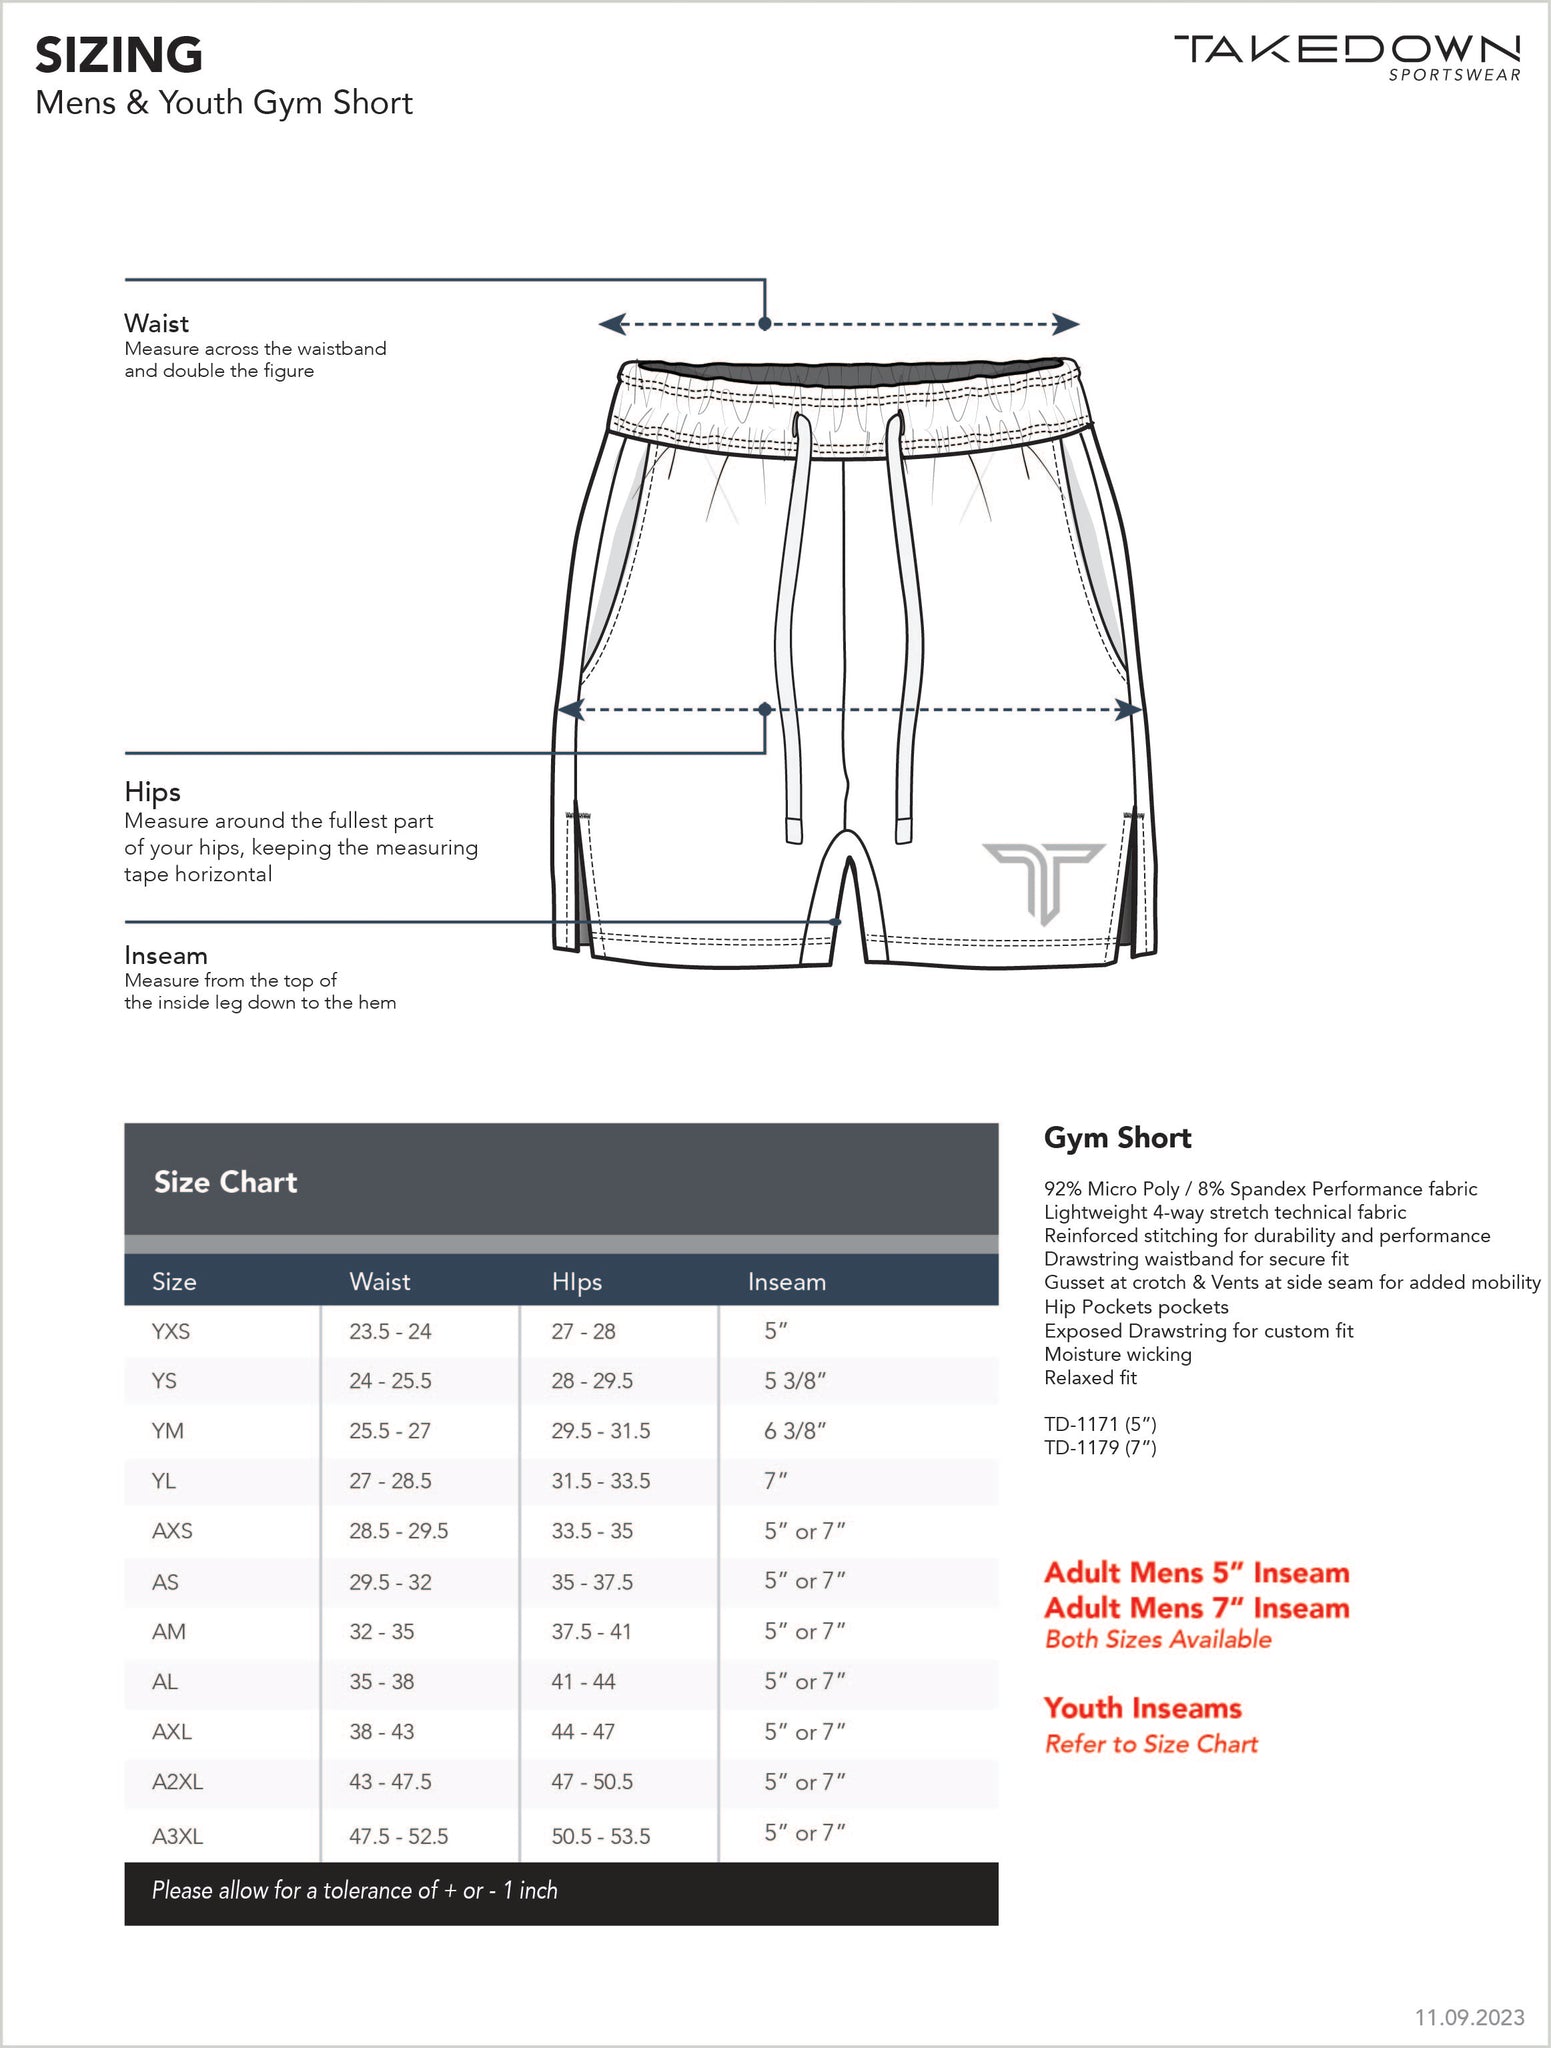 Vegas Tan Core Gym Shorts (5"&7" Inseam)